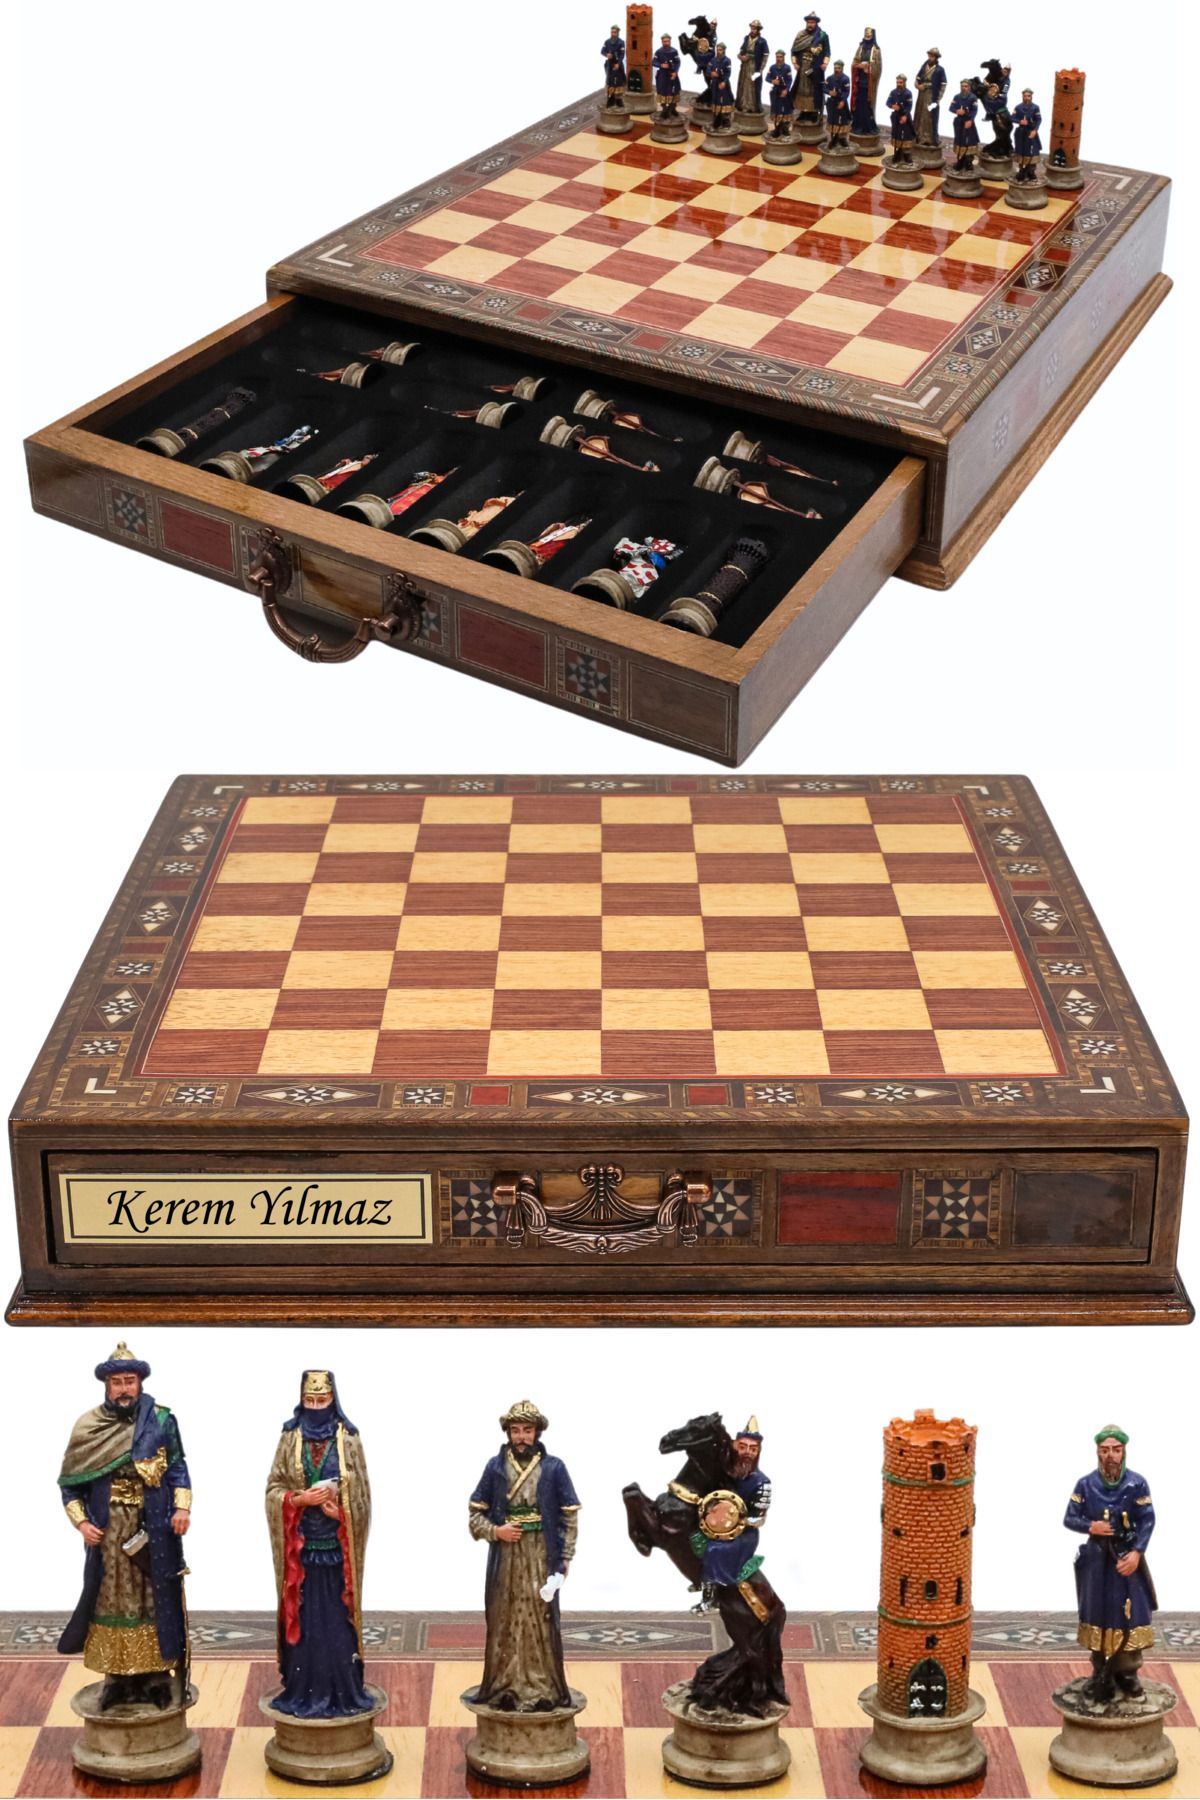 Cooper Chess Premium Büyük El Yapımı Çekmeceli Satranç Takımı – Selahaddin Eyyubi ve Haçlı Ordusu Kudüs’ün Fethi